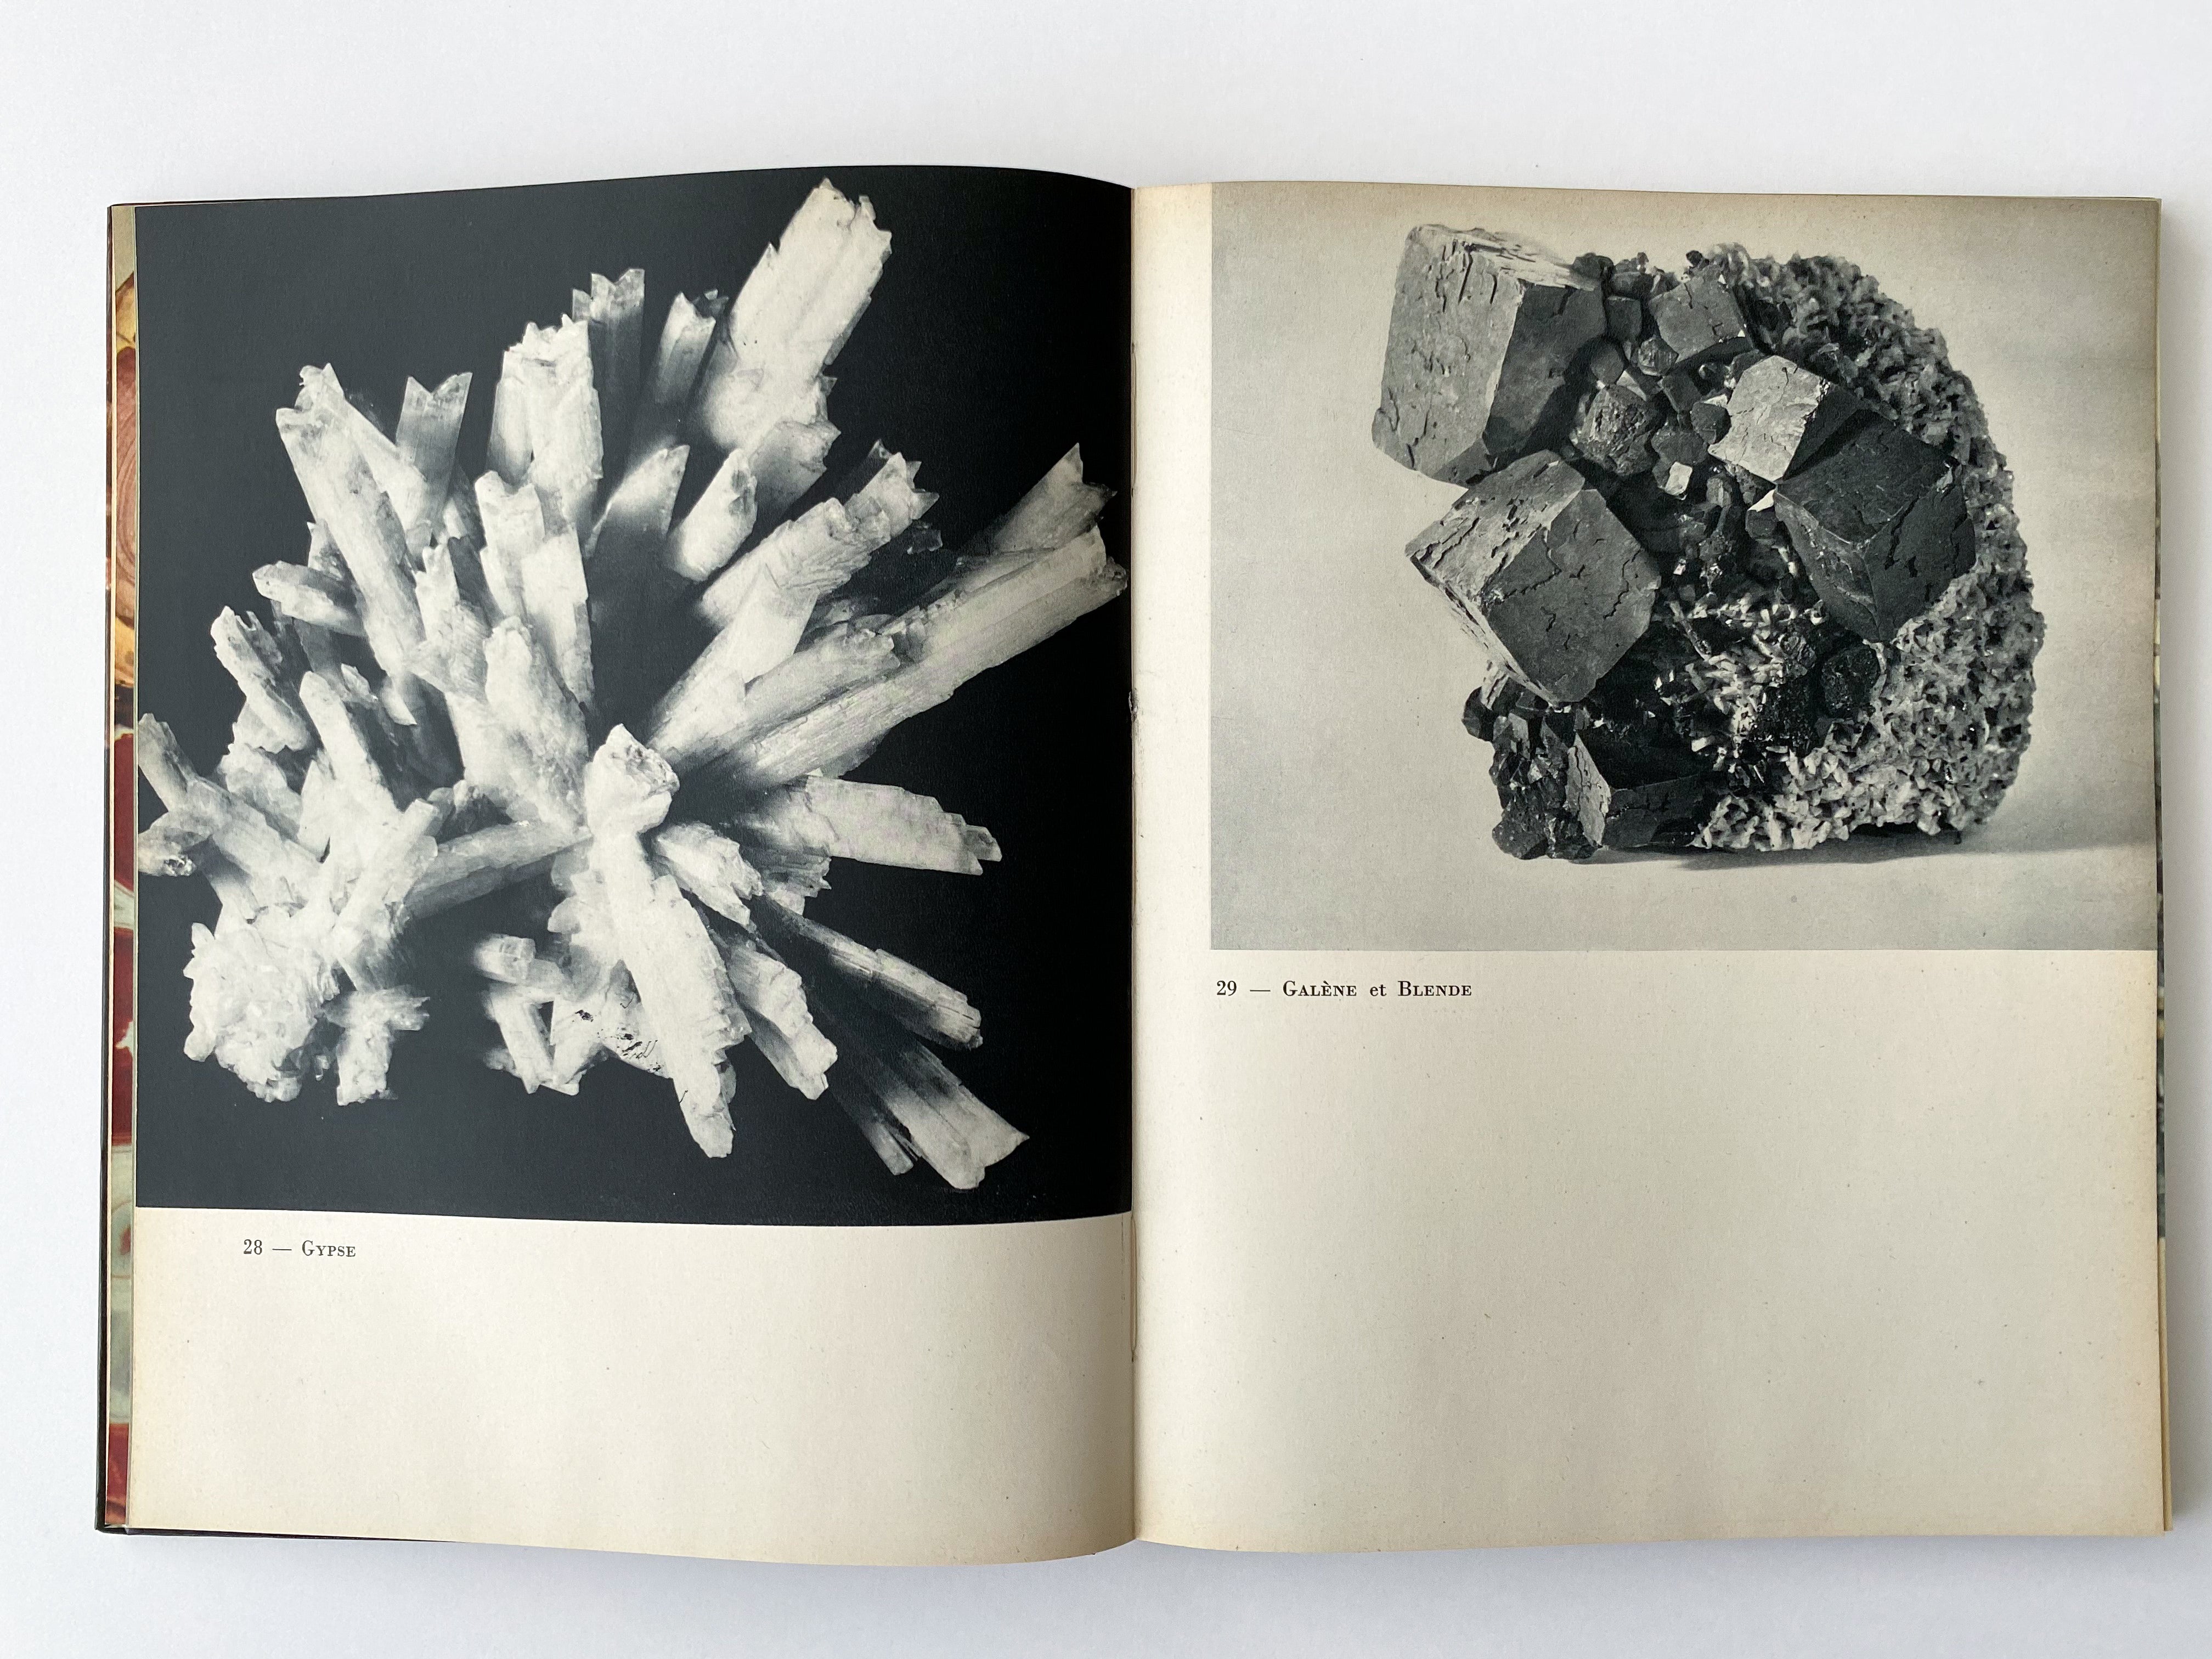 Belles roches beaux cristaux, Larousse 1956